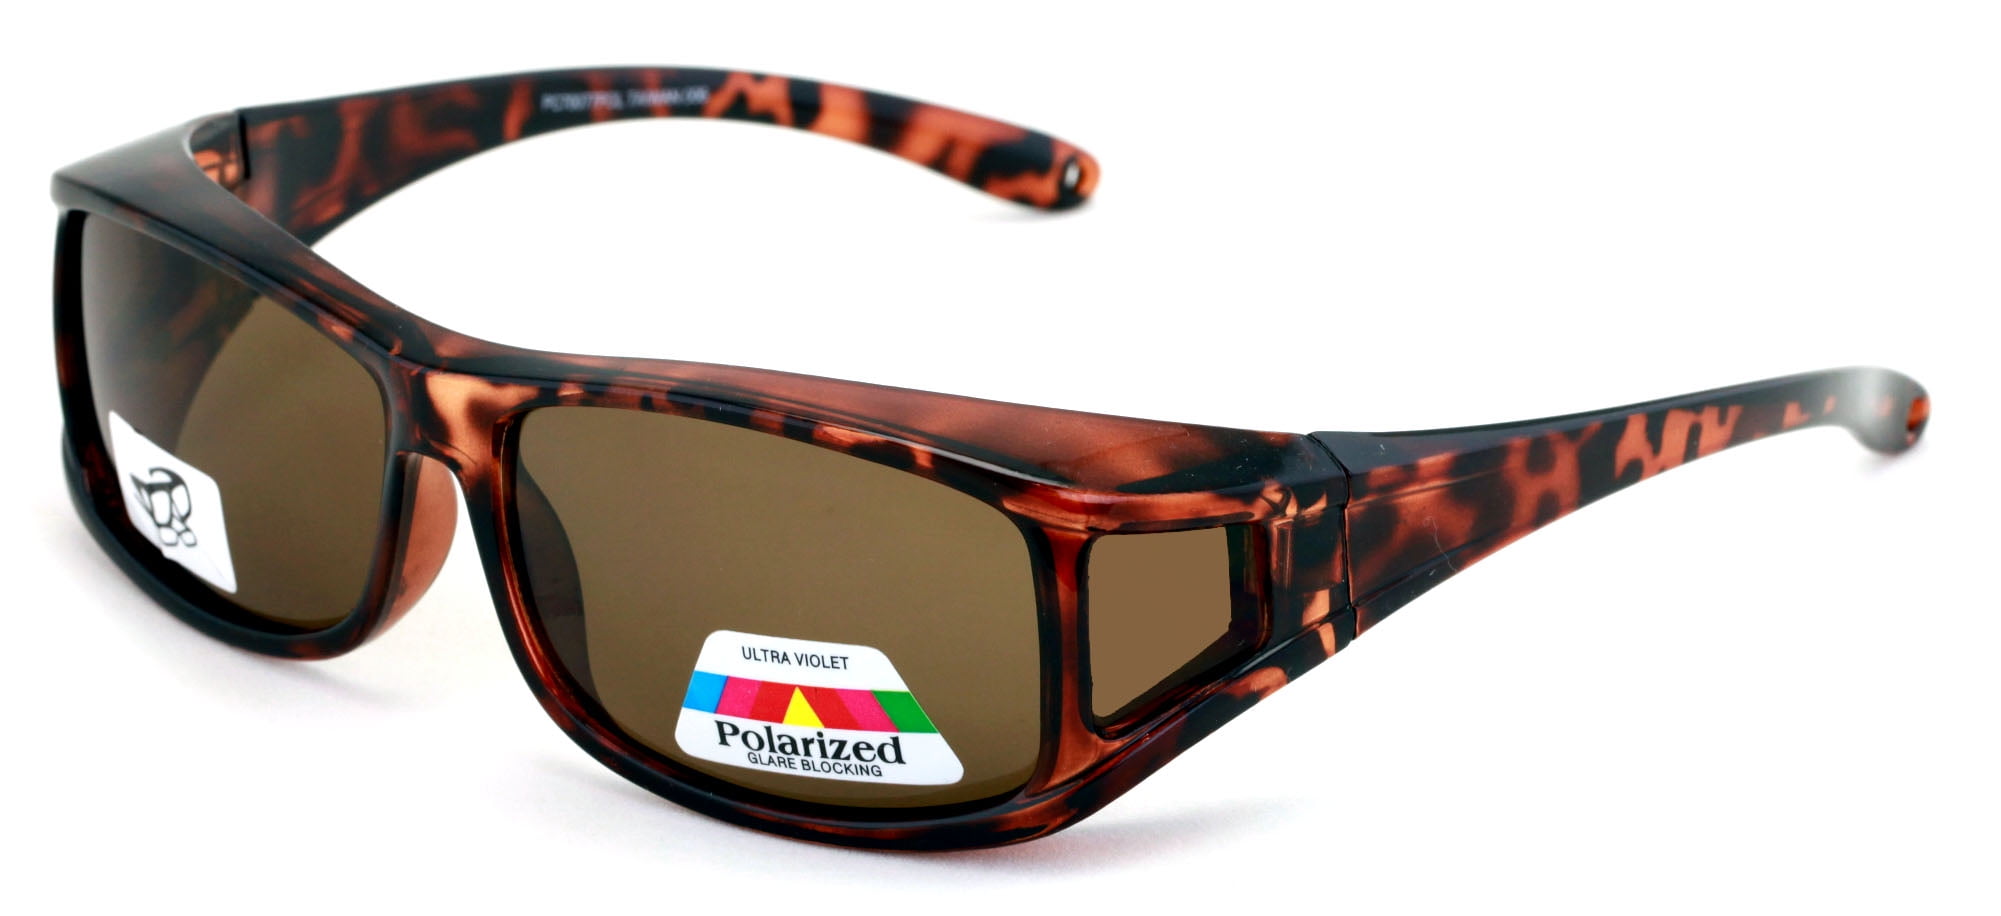 Polarized Fit Over Glasses Sunglasses 60mm Rectangular Frame